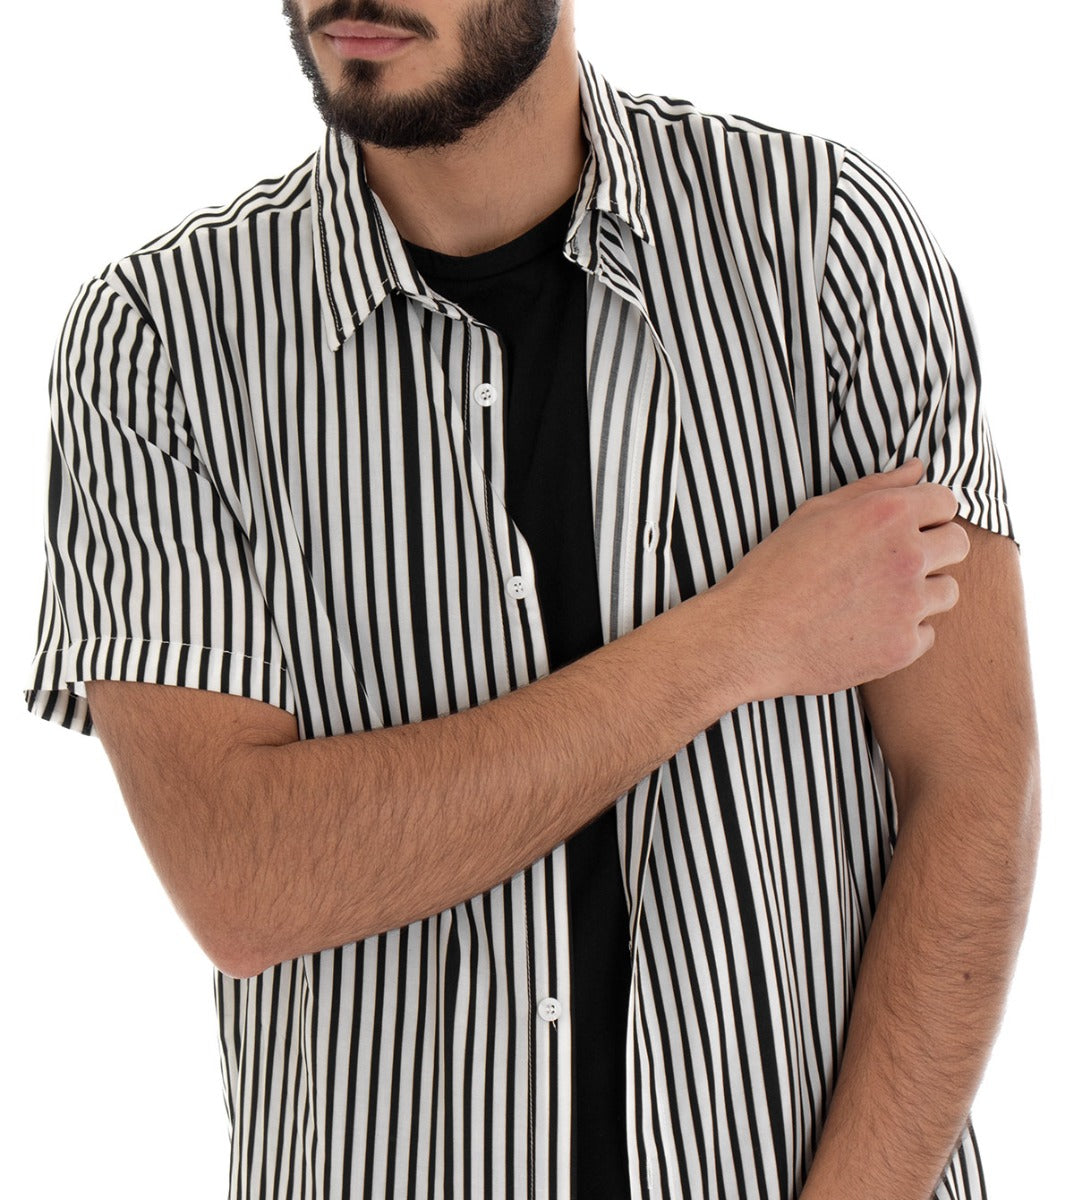 Camicia Manica Corta Uomo Rigata Righe Bicolore Bianco Nero Casual GIOSAL-CC1068A